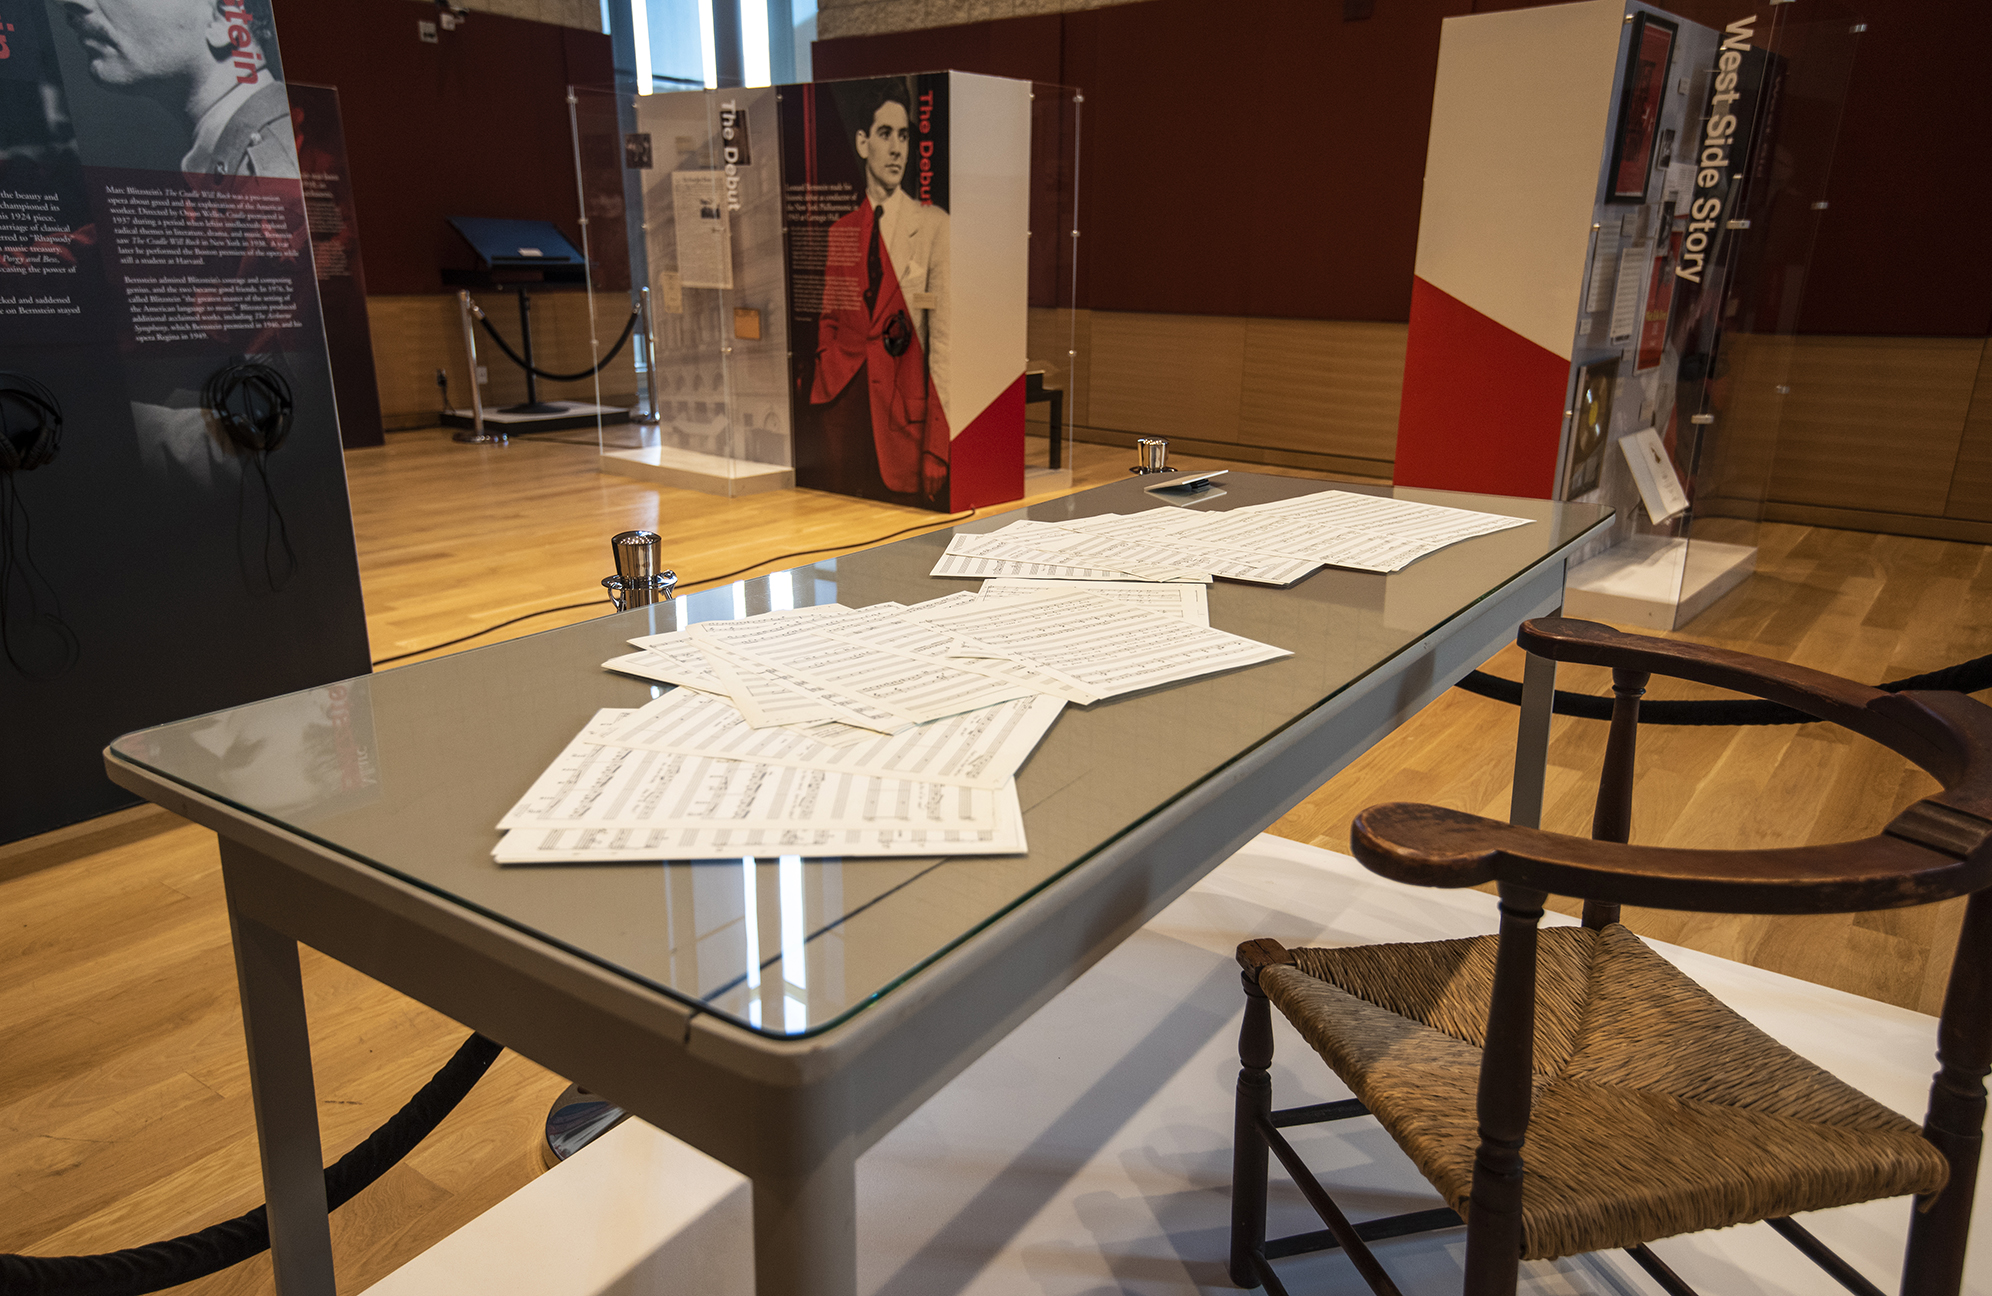 Leonard Bernstein's writing desk with sheet music, as displayed in Leonard Bernstein at 100 exhibit, on display in NEC's Burnes Hall.